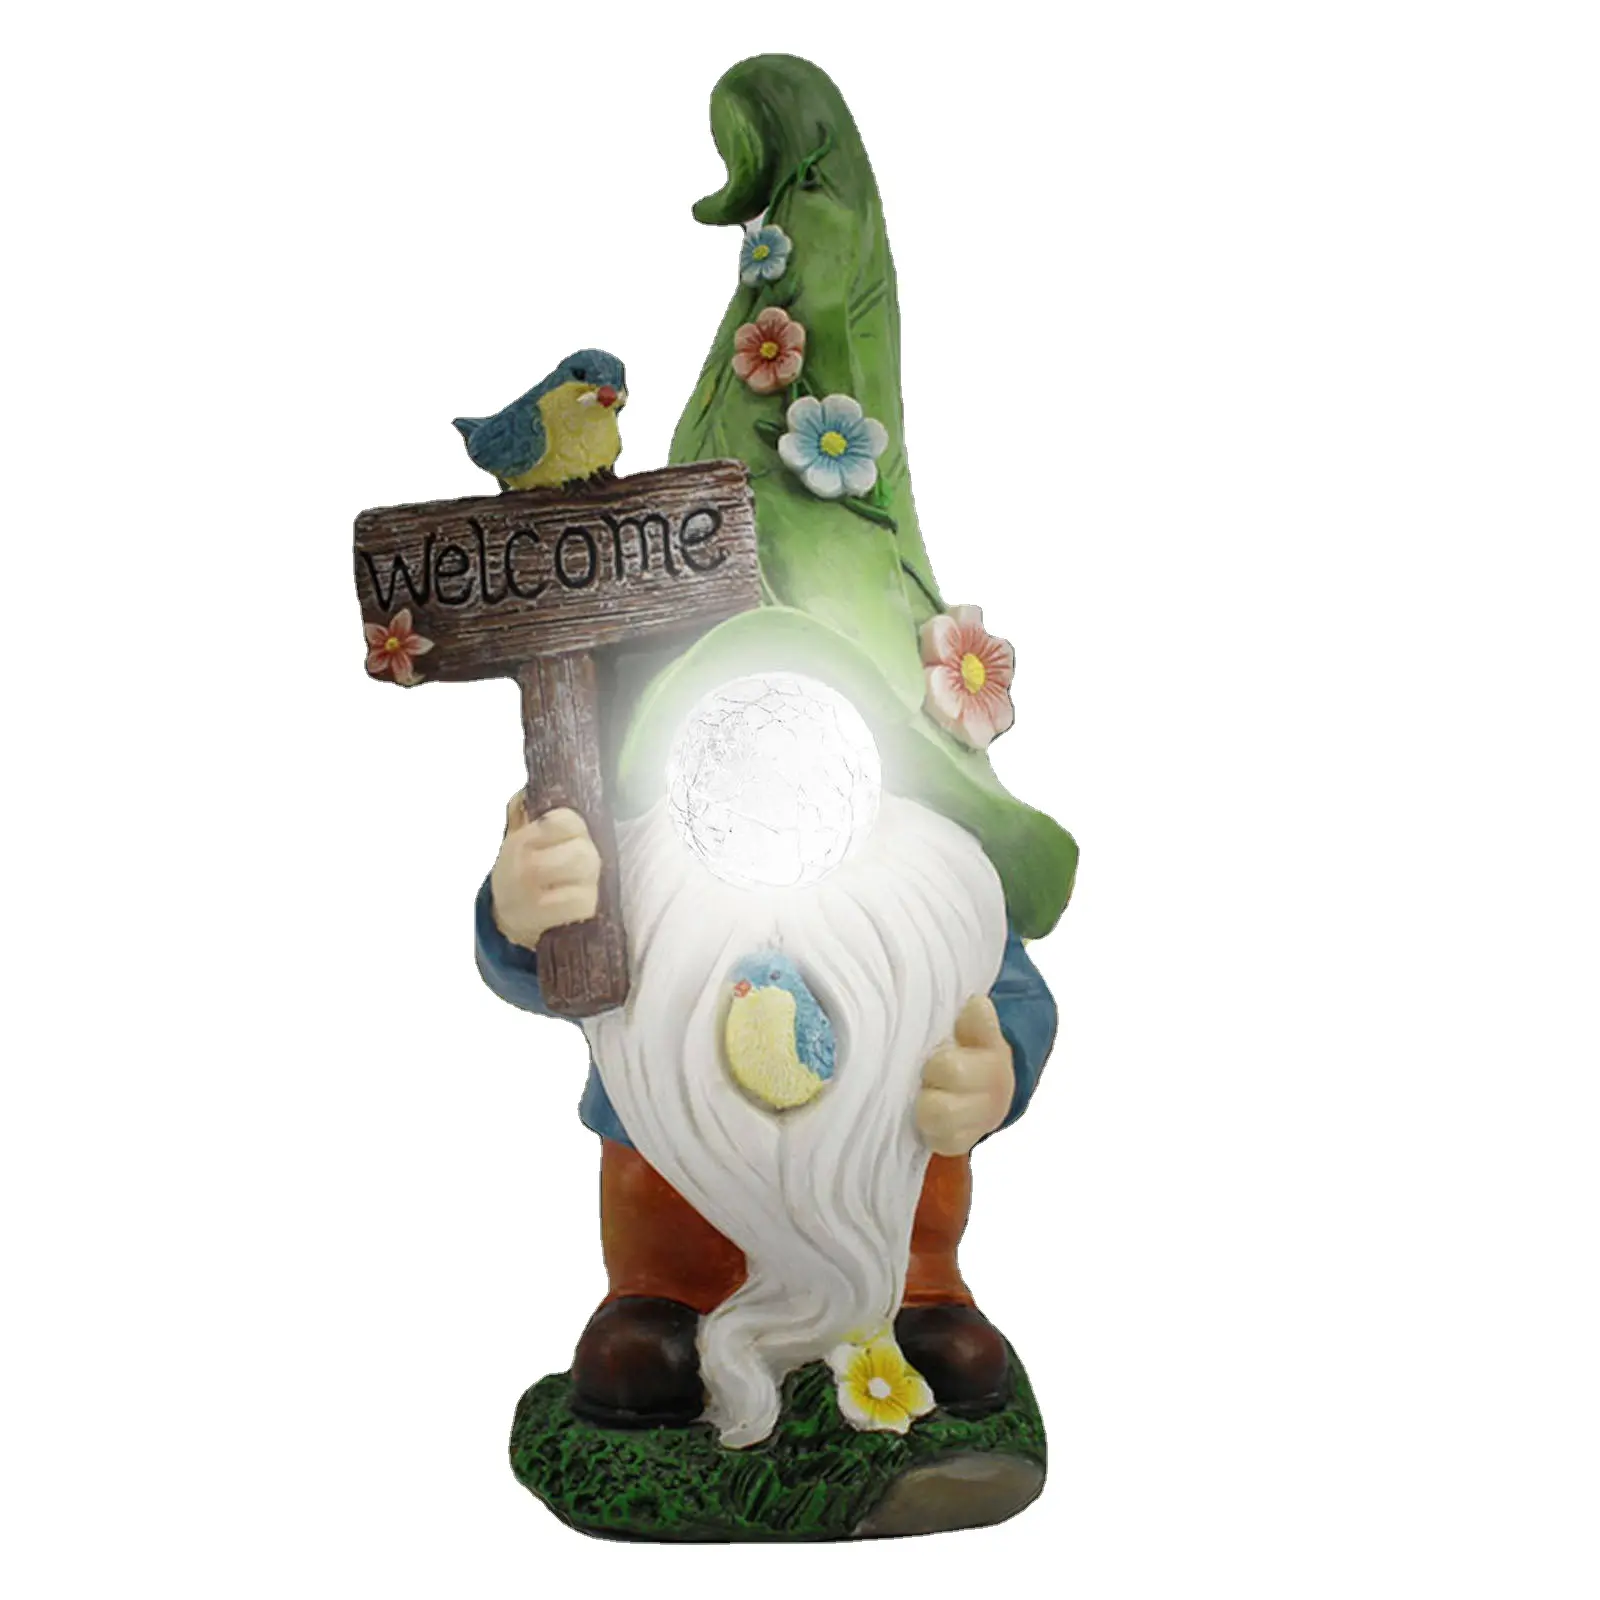 Bienvenue personnalisé Gnome Résine Artisanat Décoration Extérieure Mémorable Jardin Week-end Cour Fête Famille Voeux Signe avec Lumières Solaires